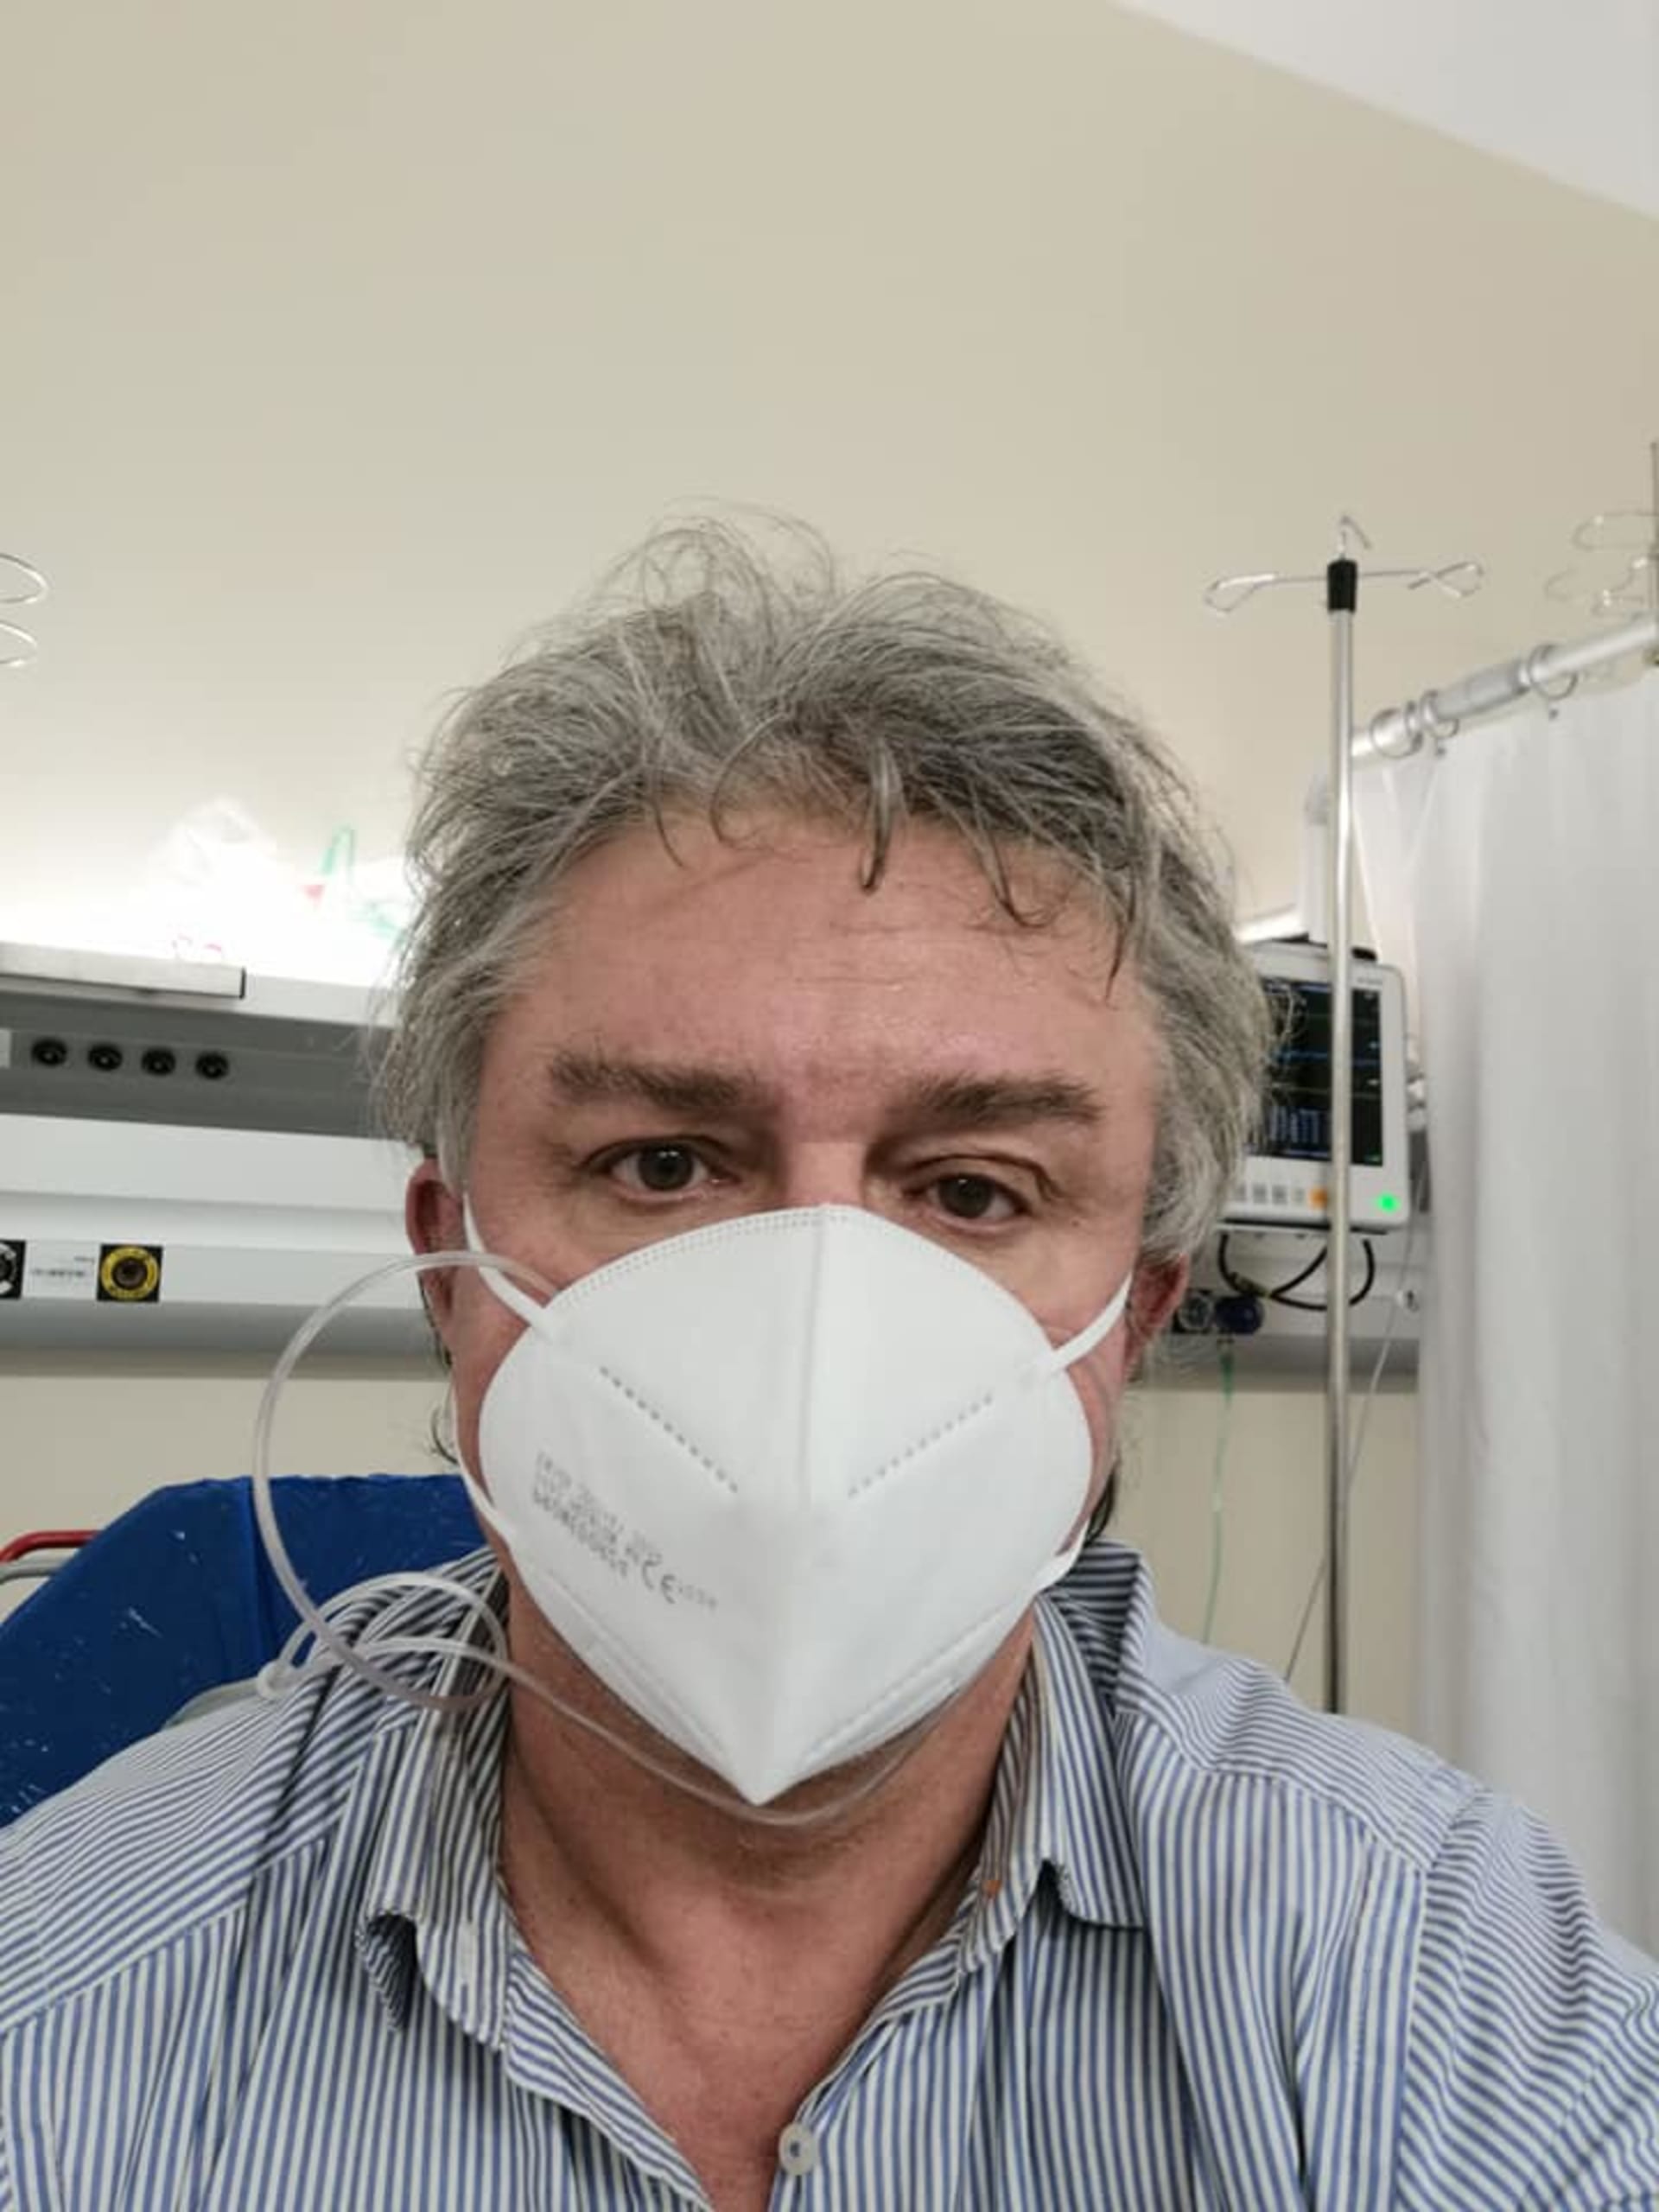 Poslanec Jiří Dolejš (KSČM) má koronavirus a je připojen na kyslík v nemocnici.